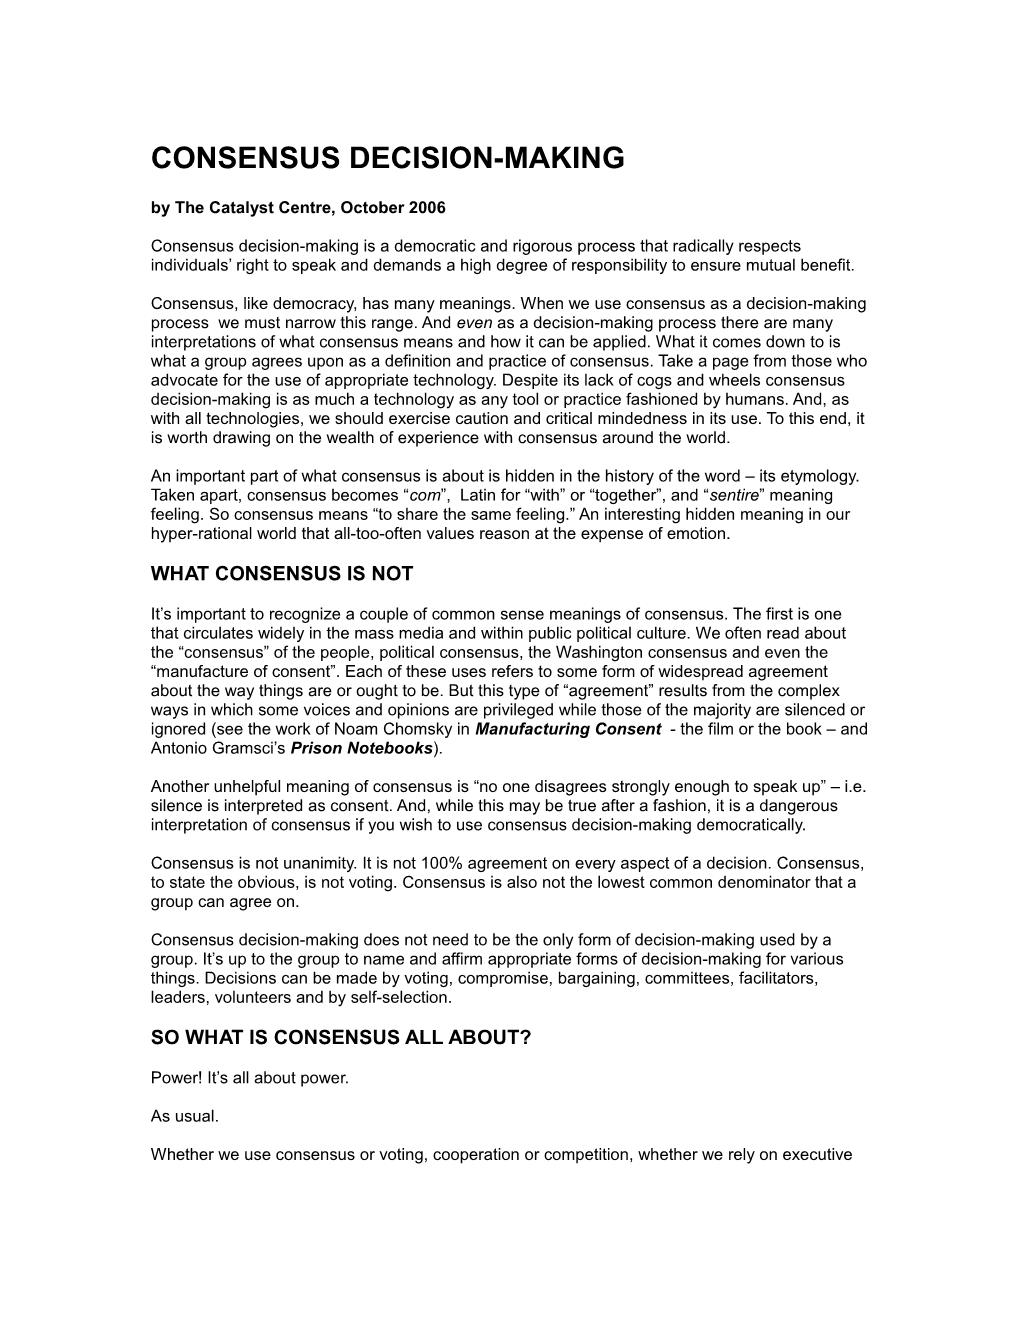 Consensus Decision-Making